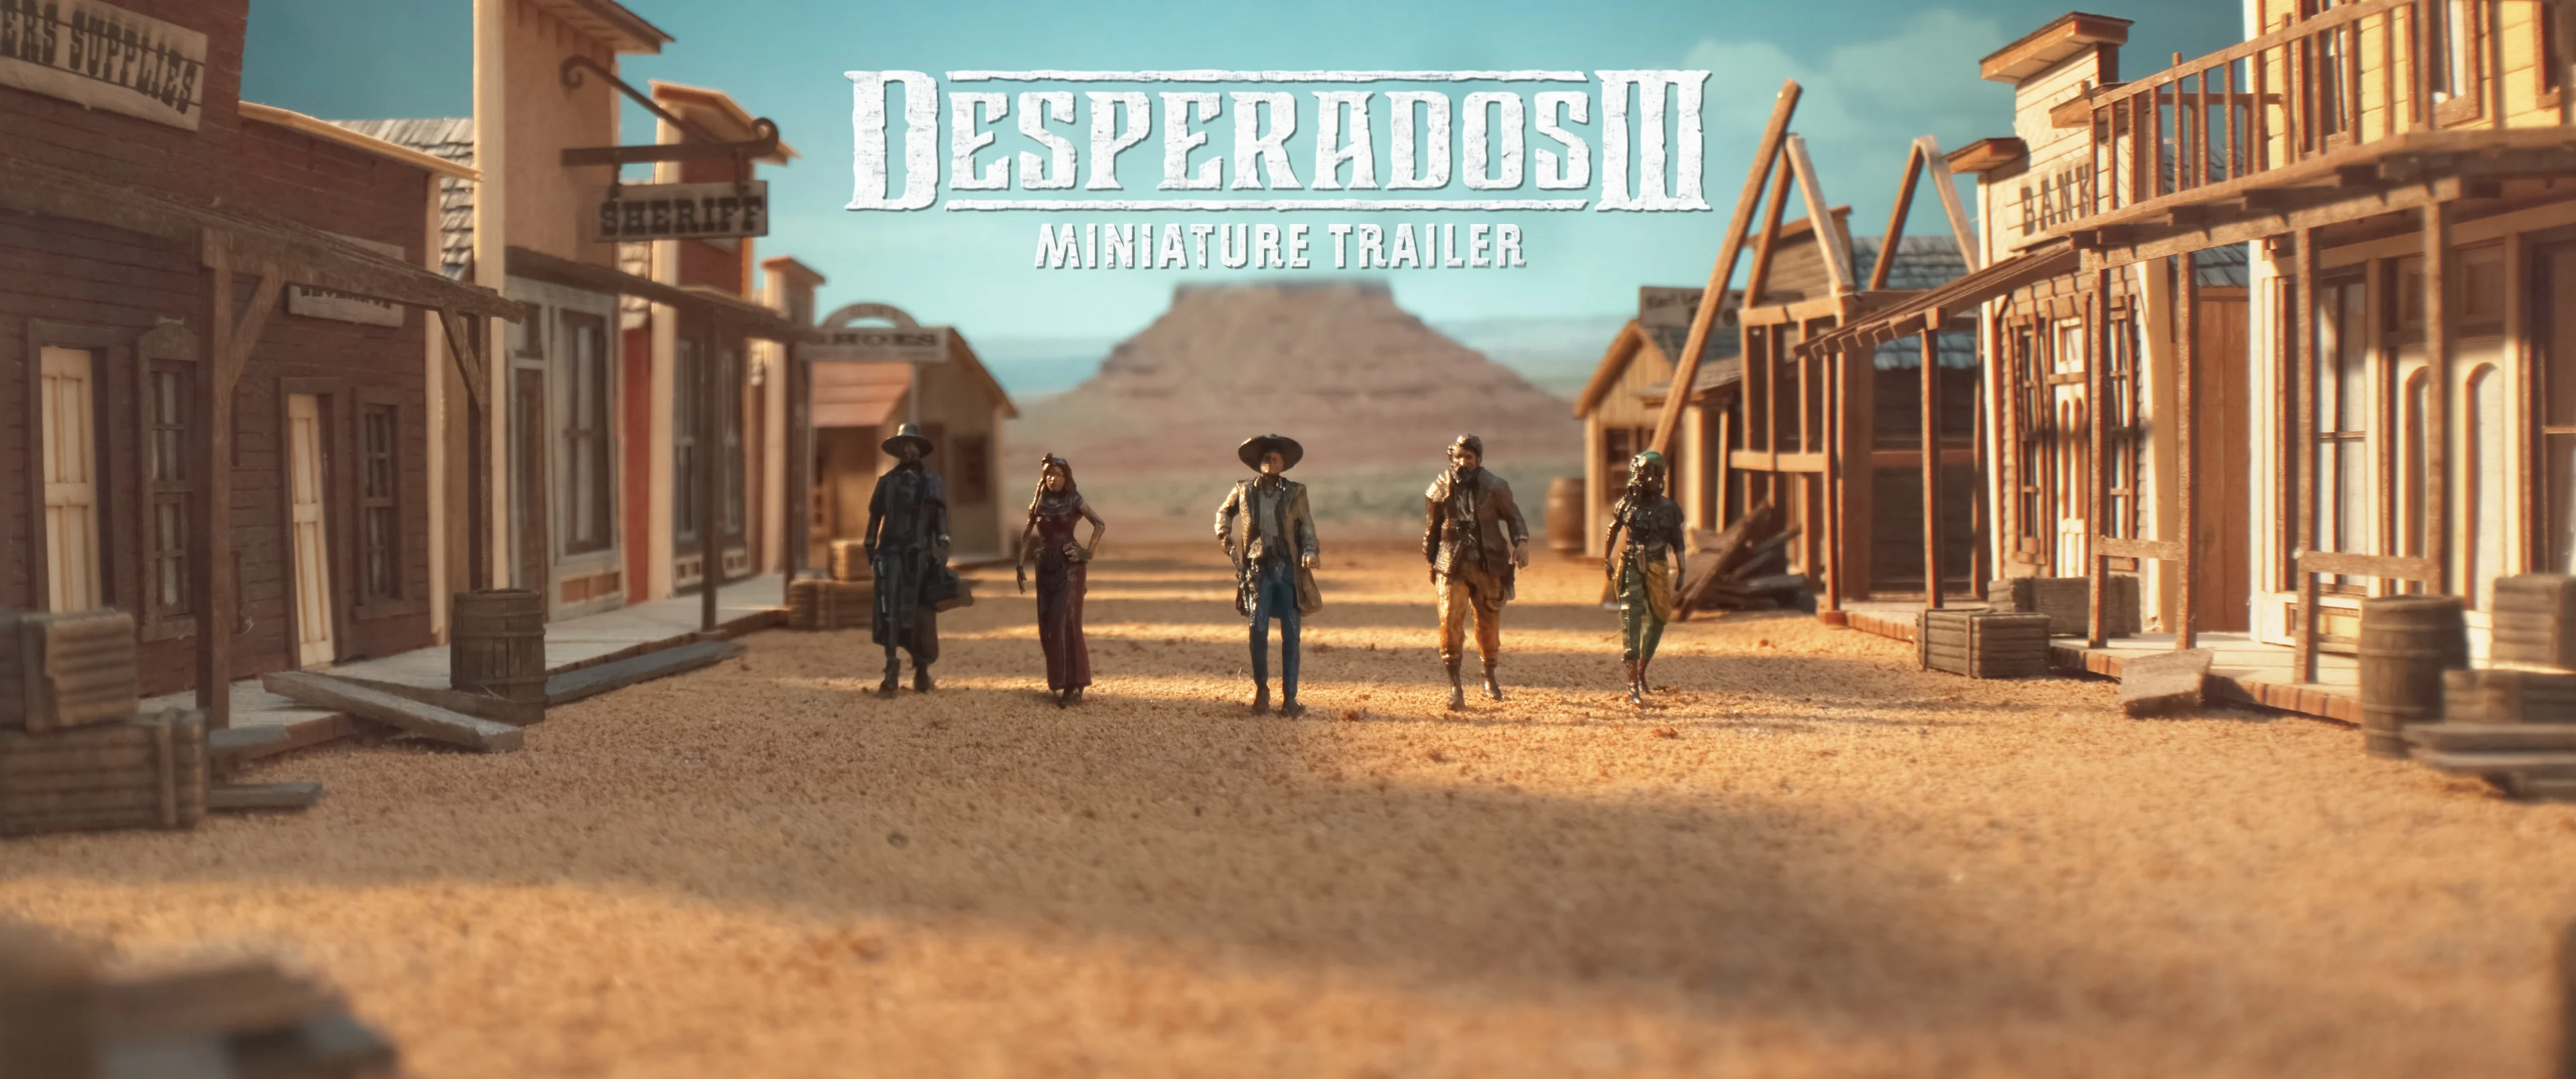 Desperados, Official Trailer